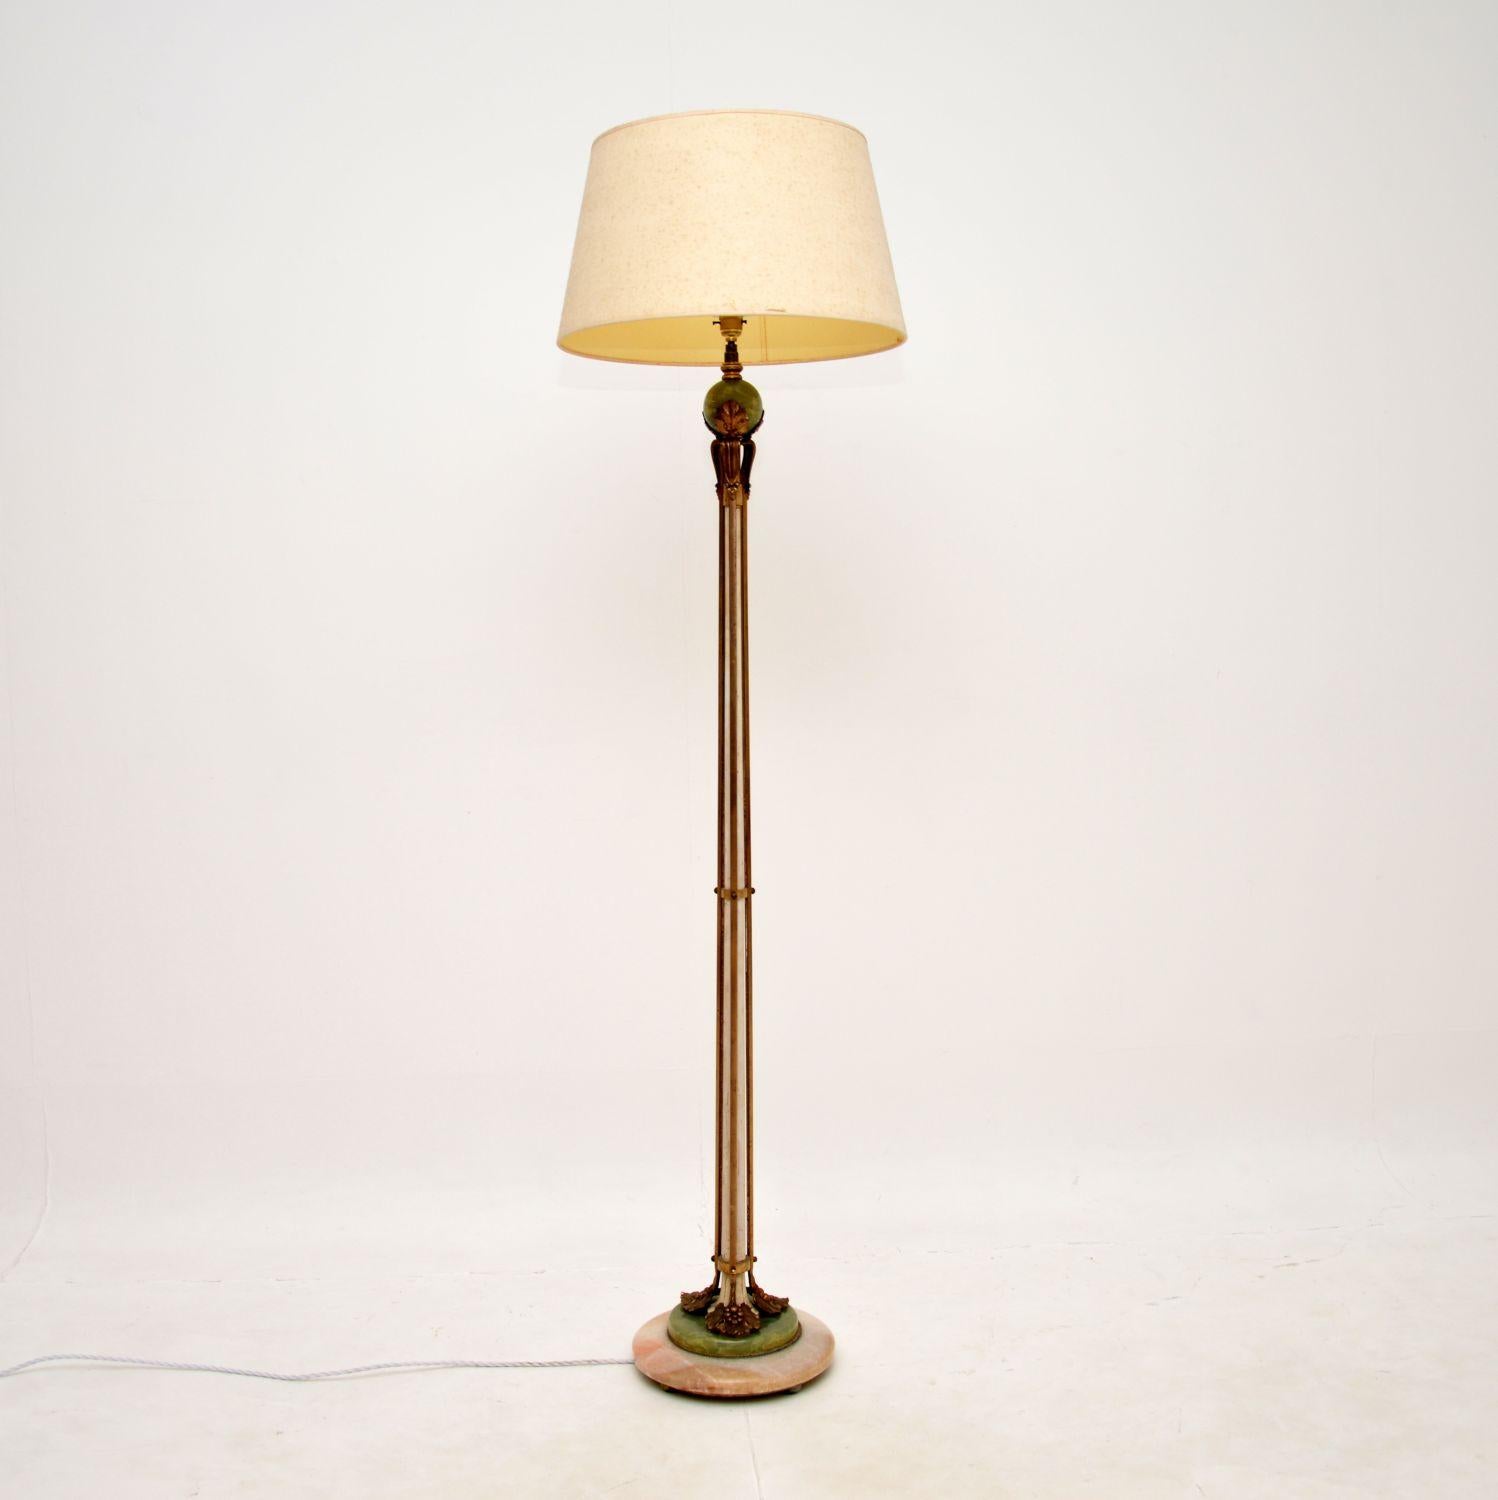 Un superbe lampadaire français ancien en onyx et métal doré. Fabriqué en France, il date des années 1920.

La qualité est exceptionnelle, la base est faite de deux types d'onyx différents, il y a aussi un joli support sphérique en onyx sous le